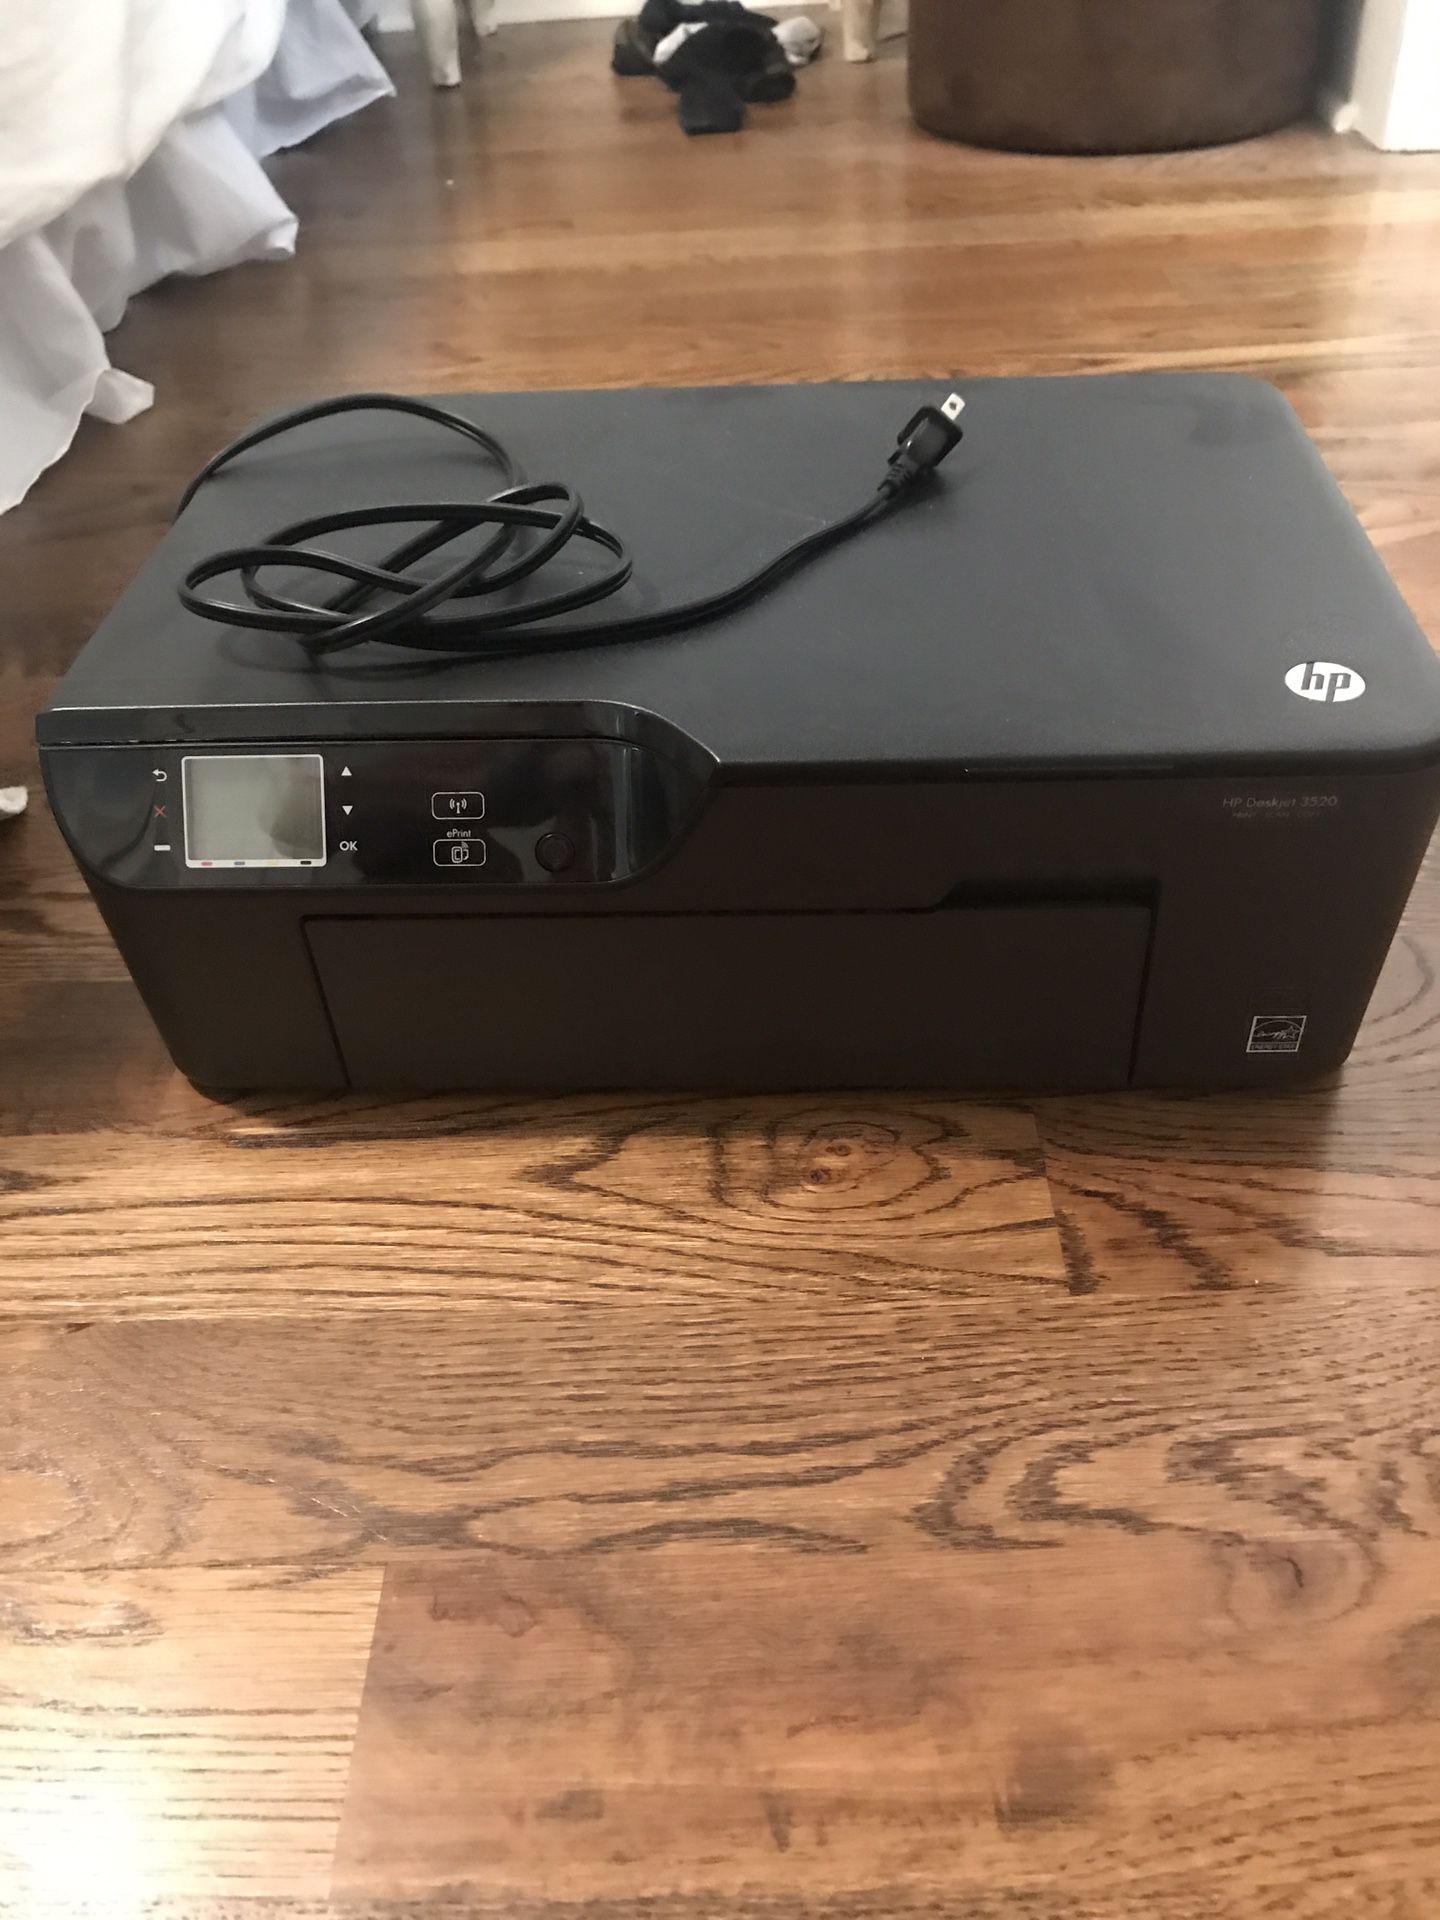 HP Deskjet 3520 Print-Scan-Copy